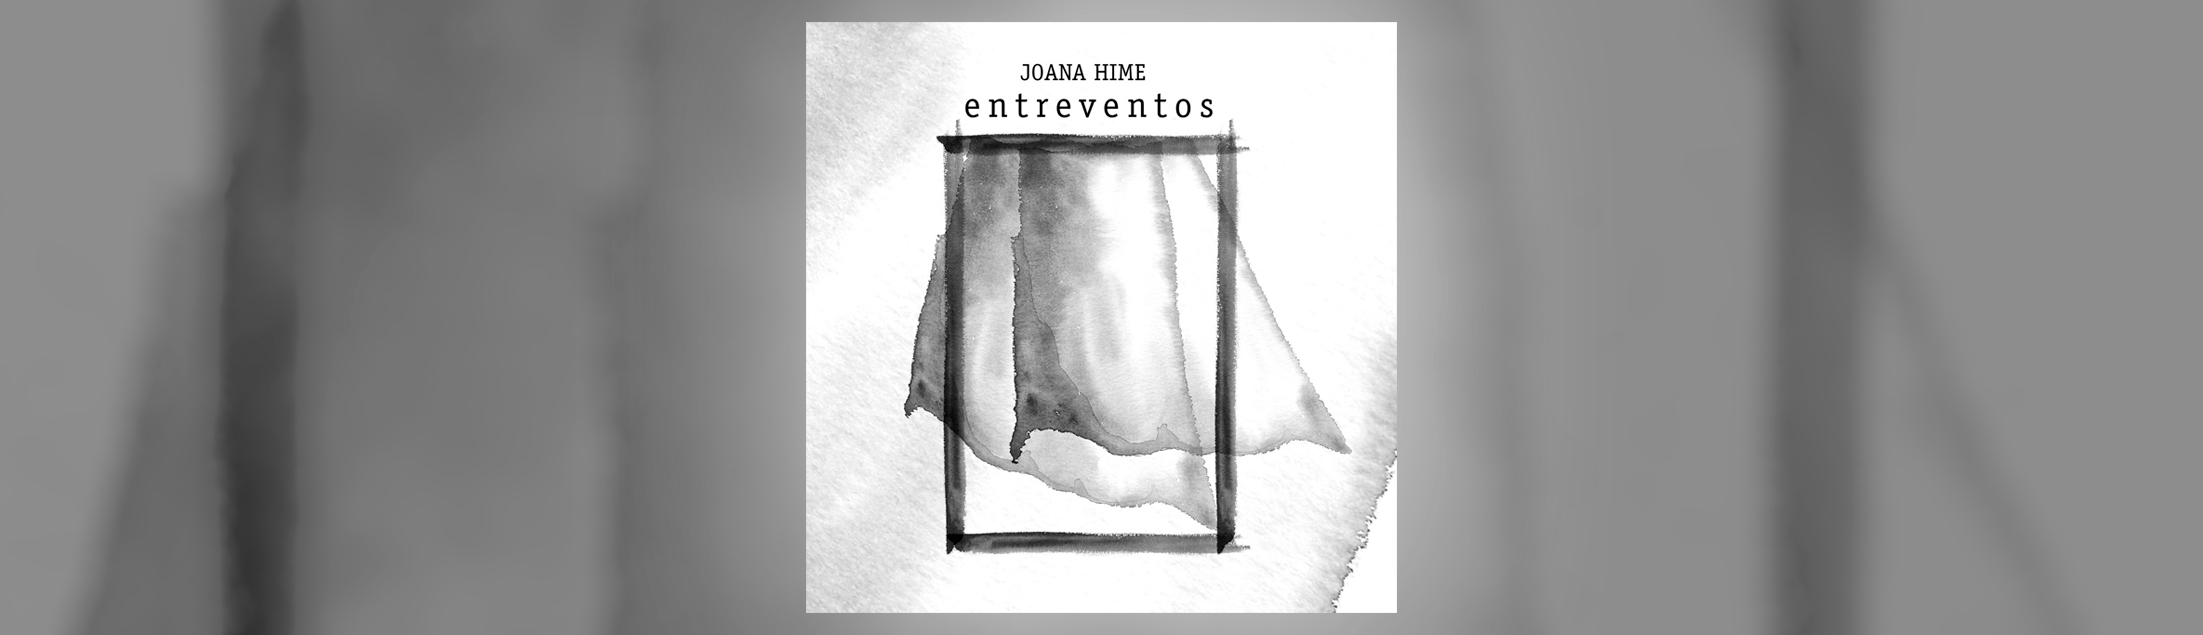 Joana Hime lança o single 'Entreventos' nas plataformas digitais